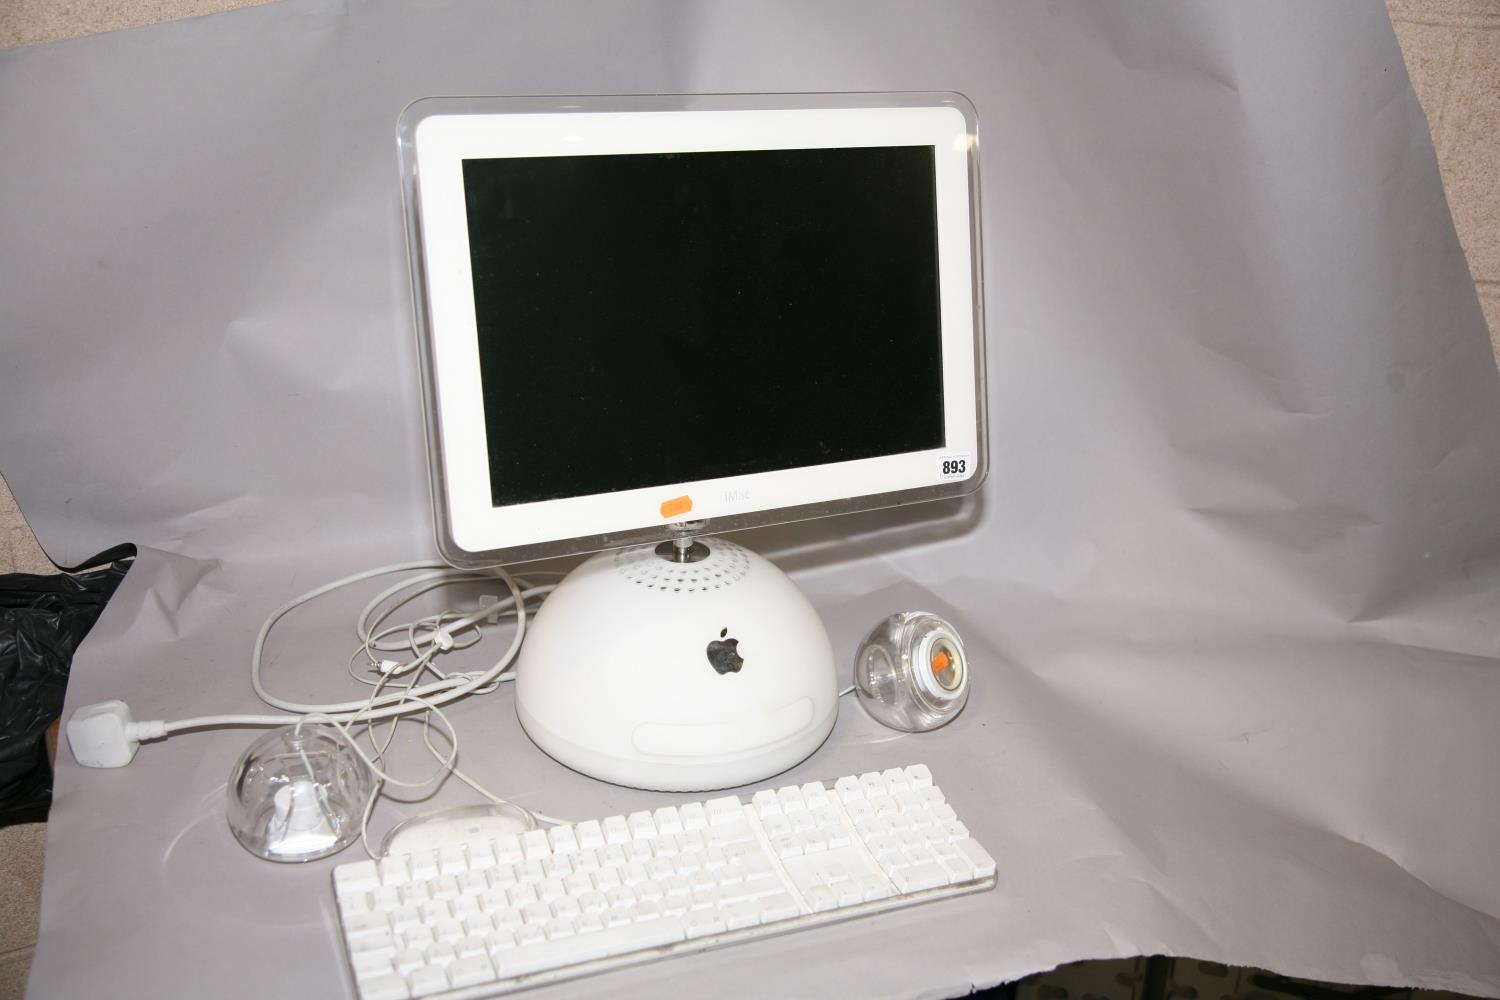 iMac g4 M6498 15inch ＋ 純正キーボード＋初期化用ディスク+rubic.us